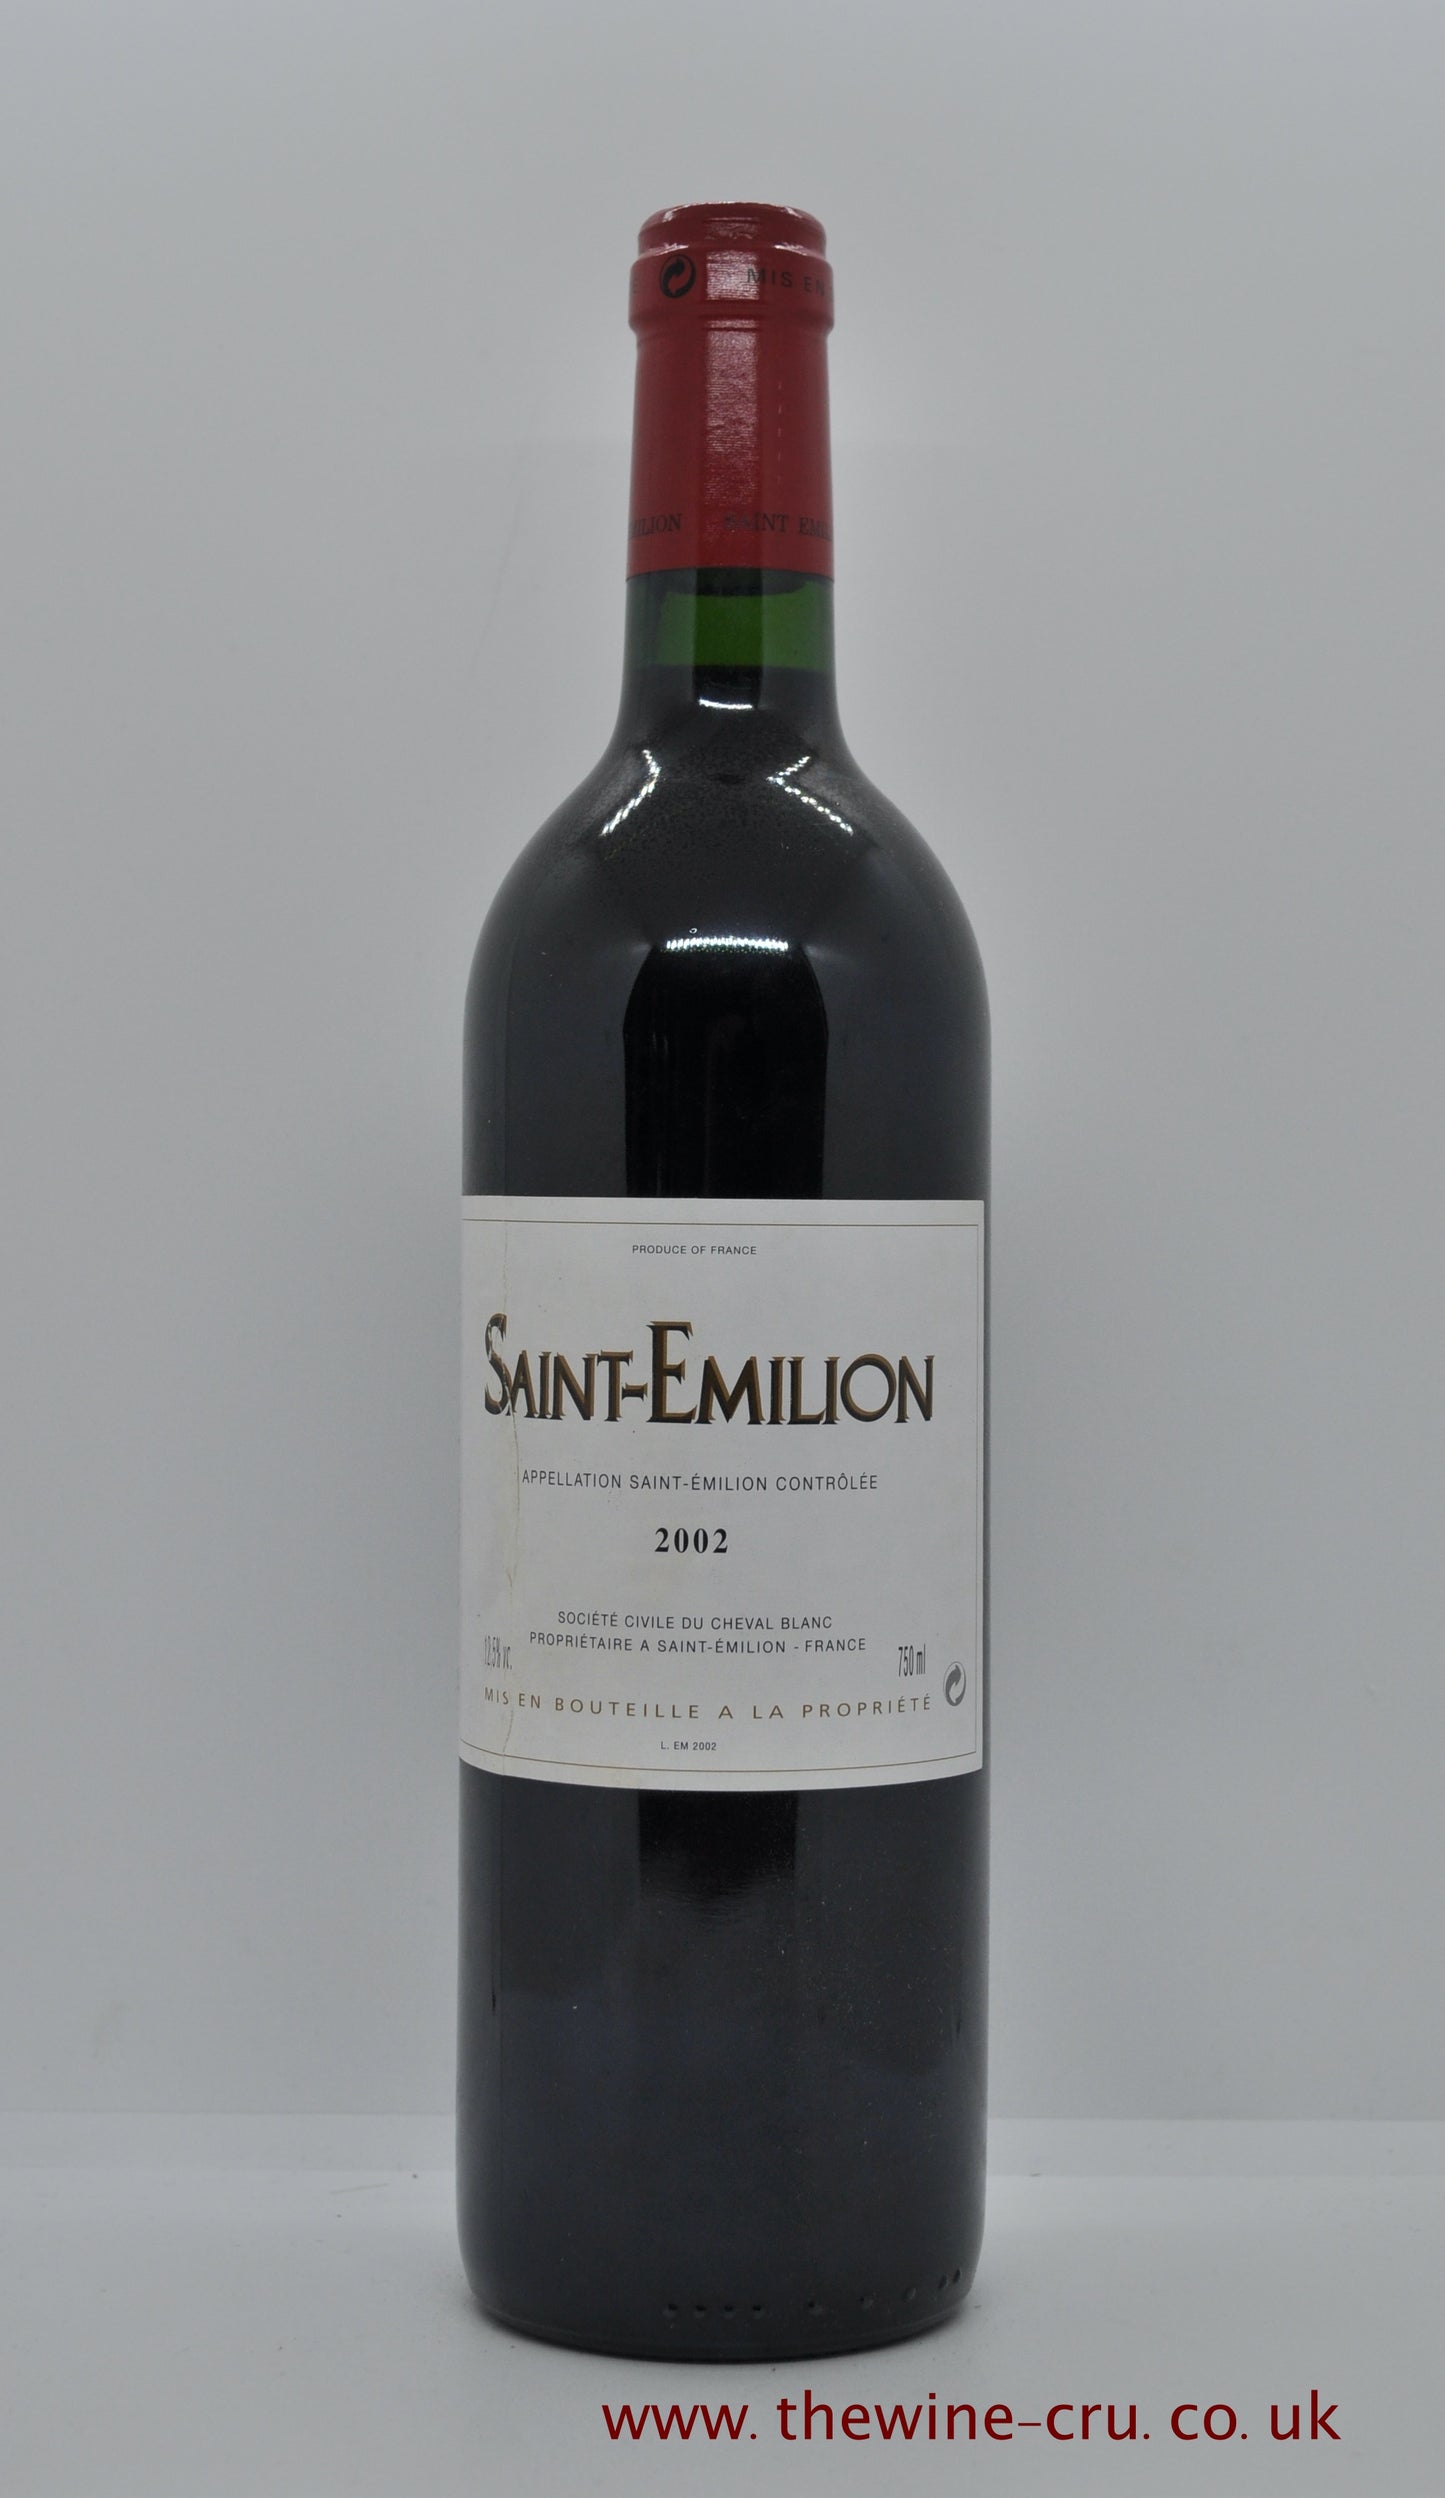 Saint Emilion Society Civile Du Cheval Blanc 2002 france Bordeaux